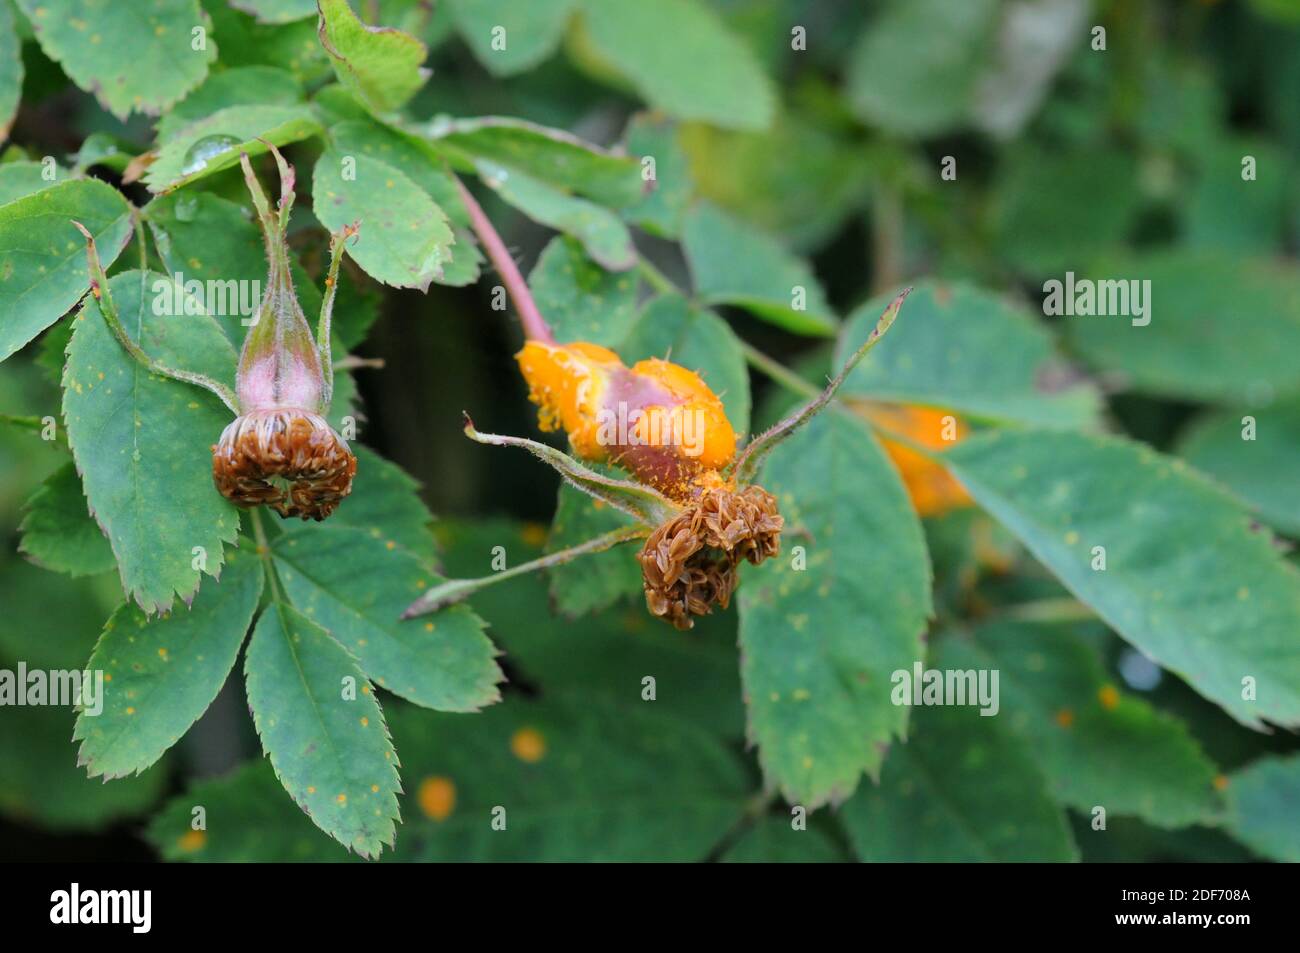 Phragmidium tuberculatum is a rust fungus parasite of Rosaceae plants. Stock Photo